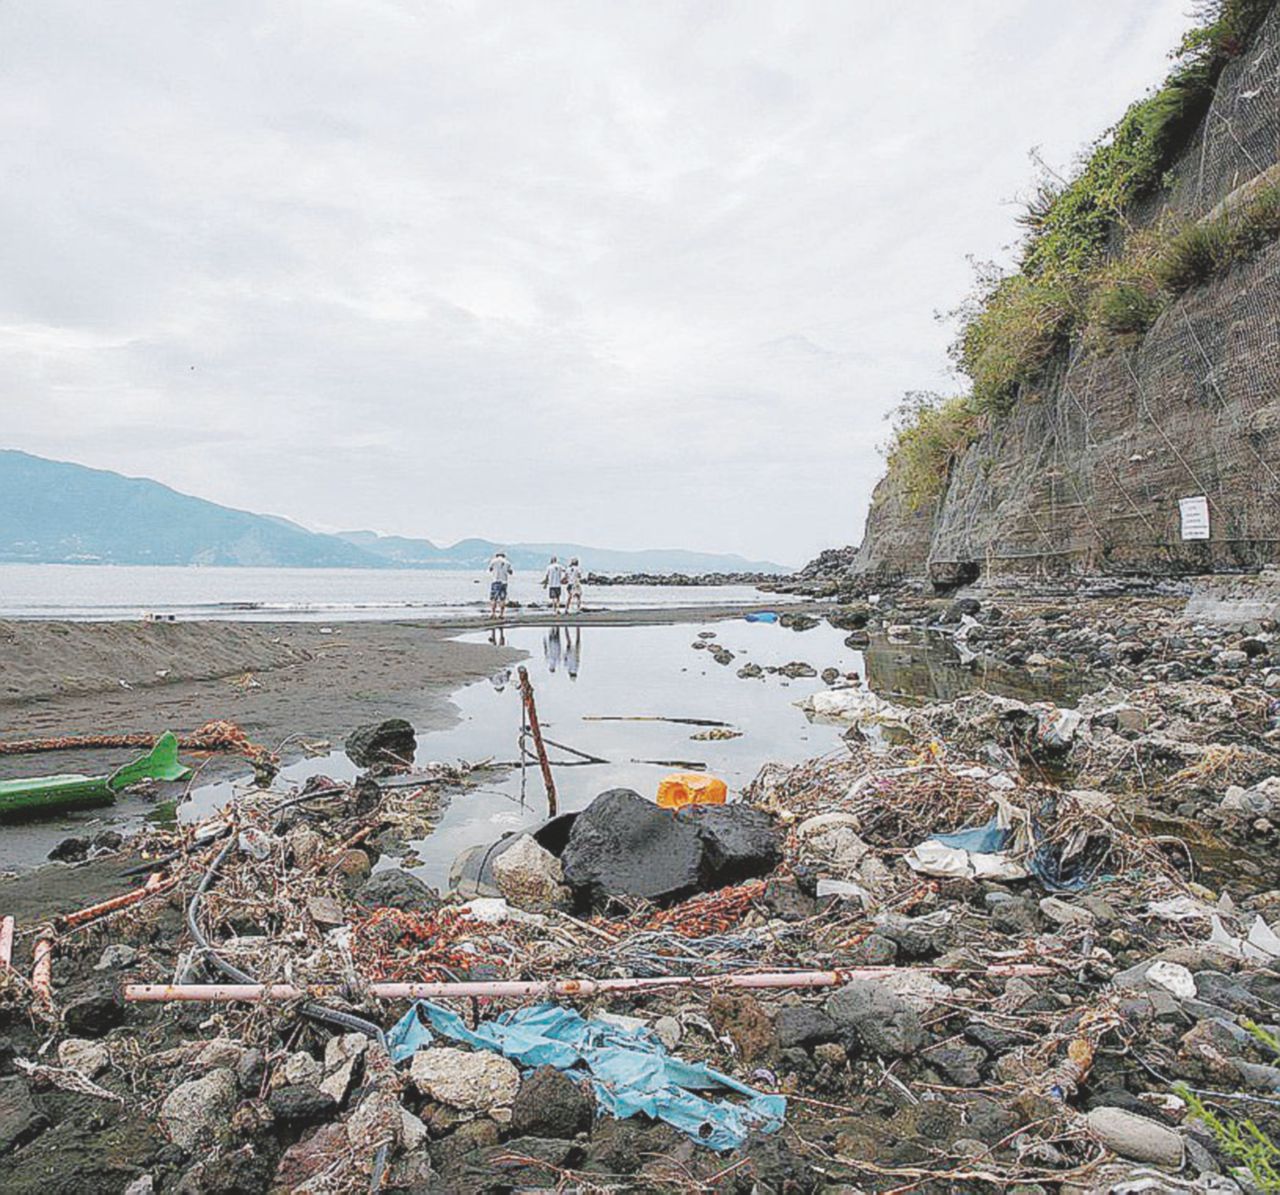 Copertina di Goletta Verde, 137 lidi inquinati: “Acqua sporca ma niente cartelli”